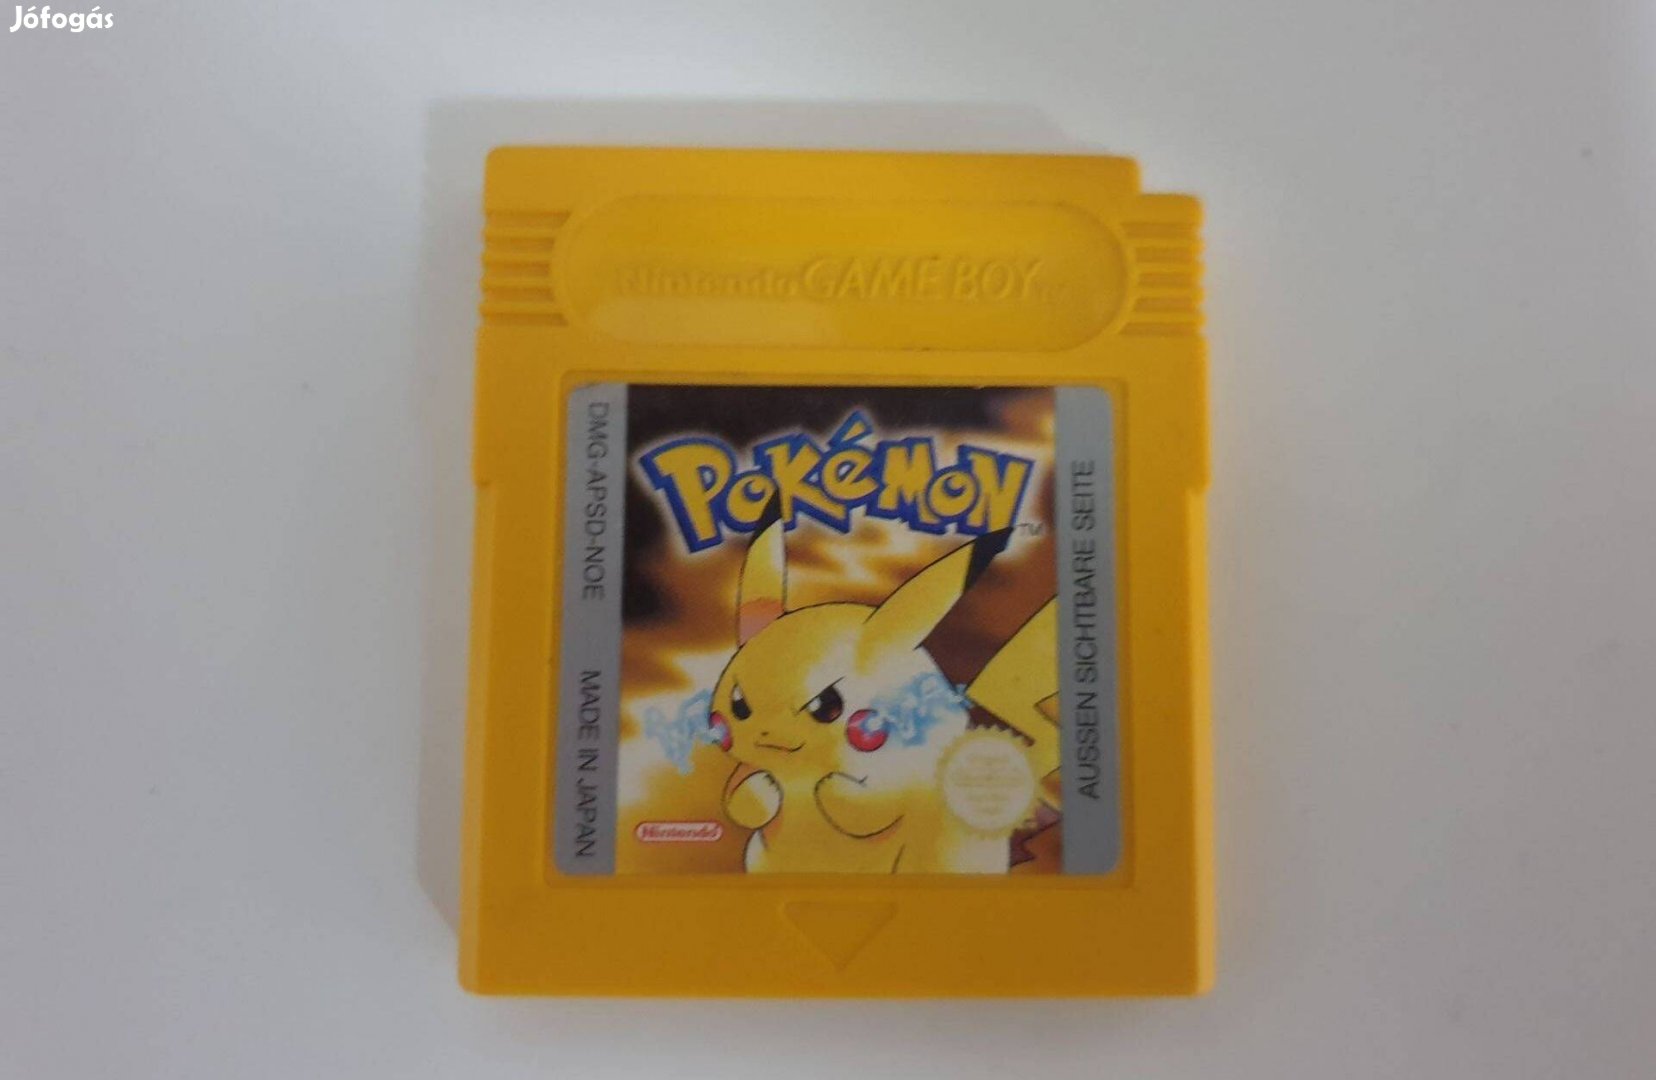 Pokémon Pokemon Yellow Version Német Gameboy Game Boy játék eredeti